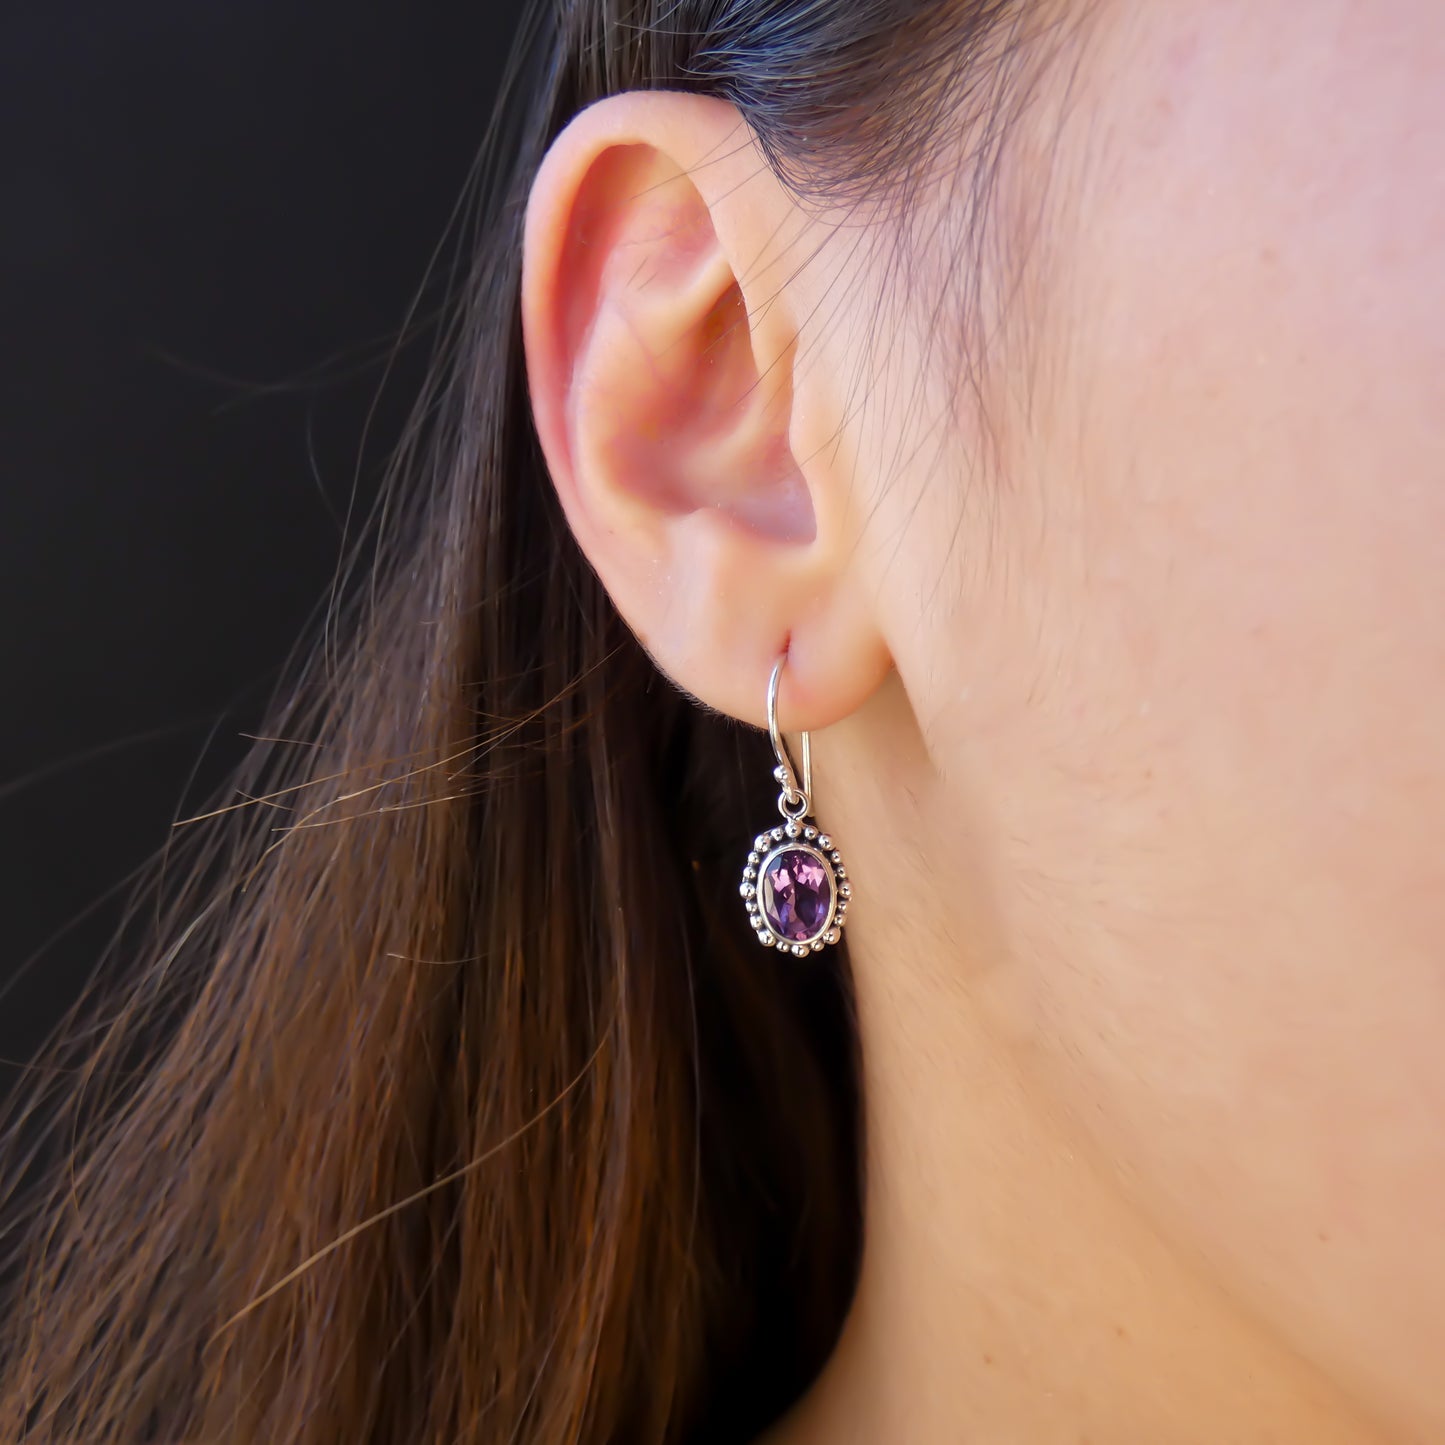 Woman wearing silver earrings with oval purple amethyst gemstones.